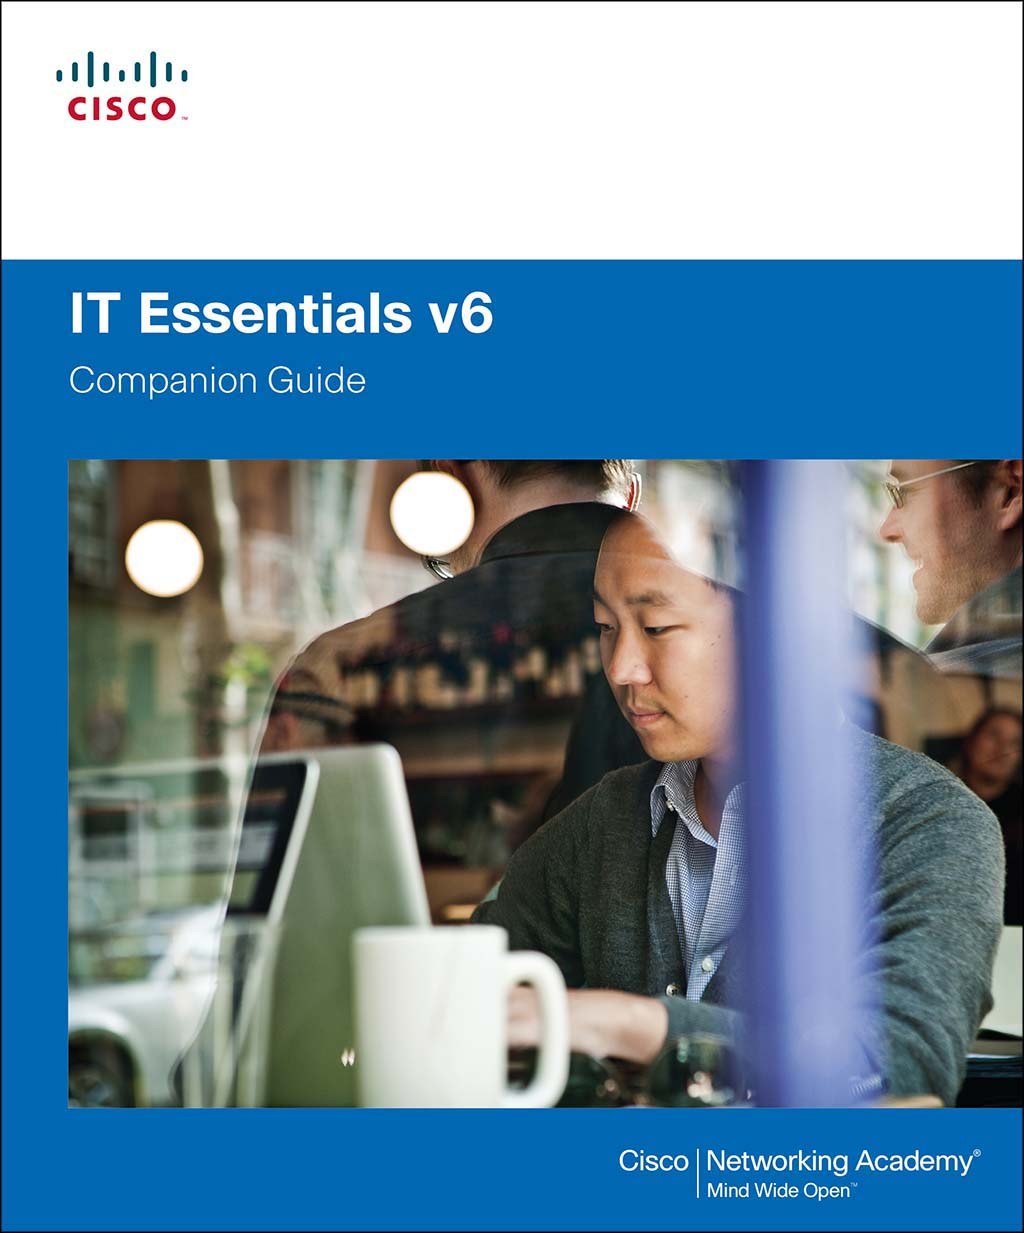 IT Essentials Companion Guide v6, 6th Edition